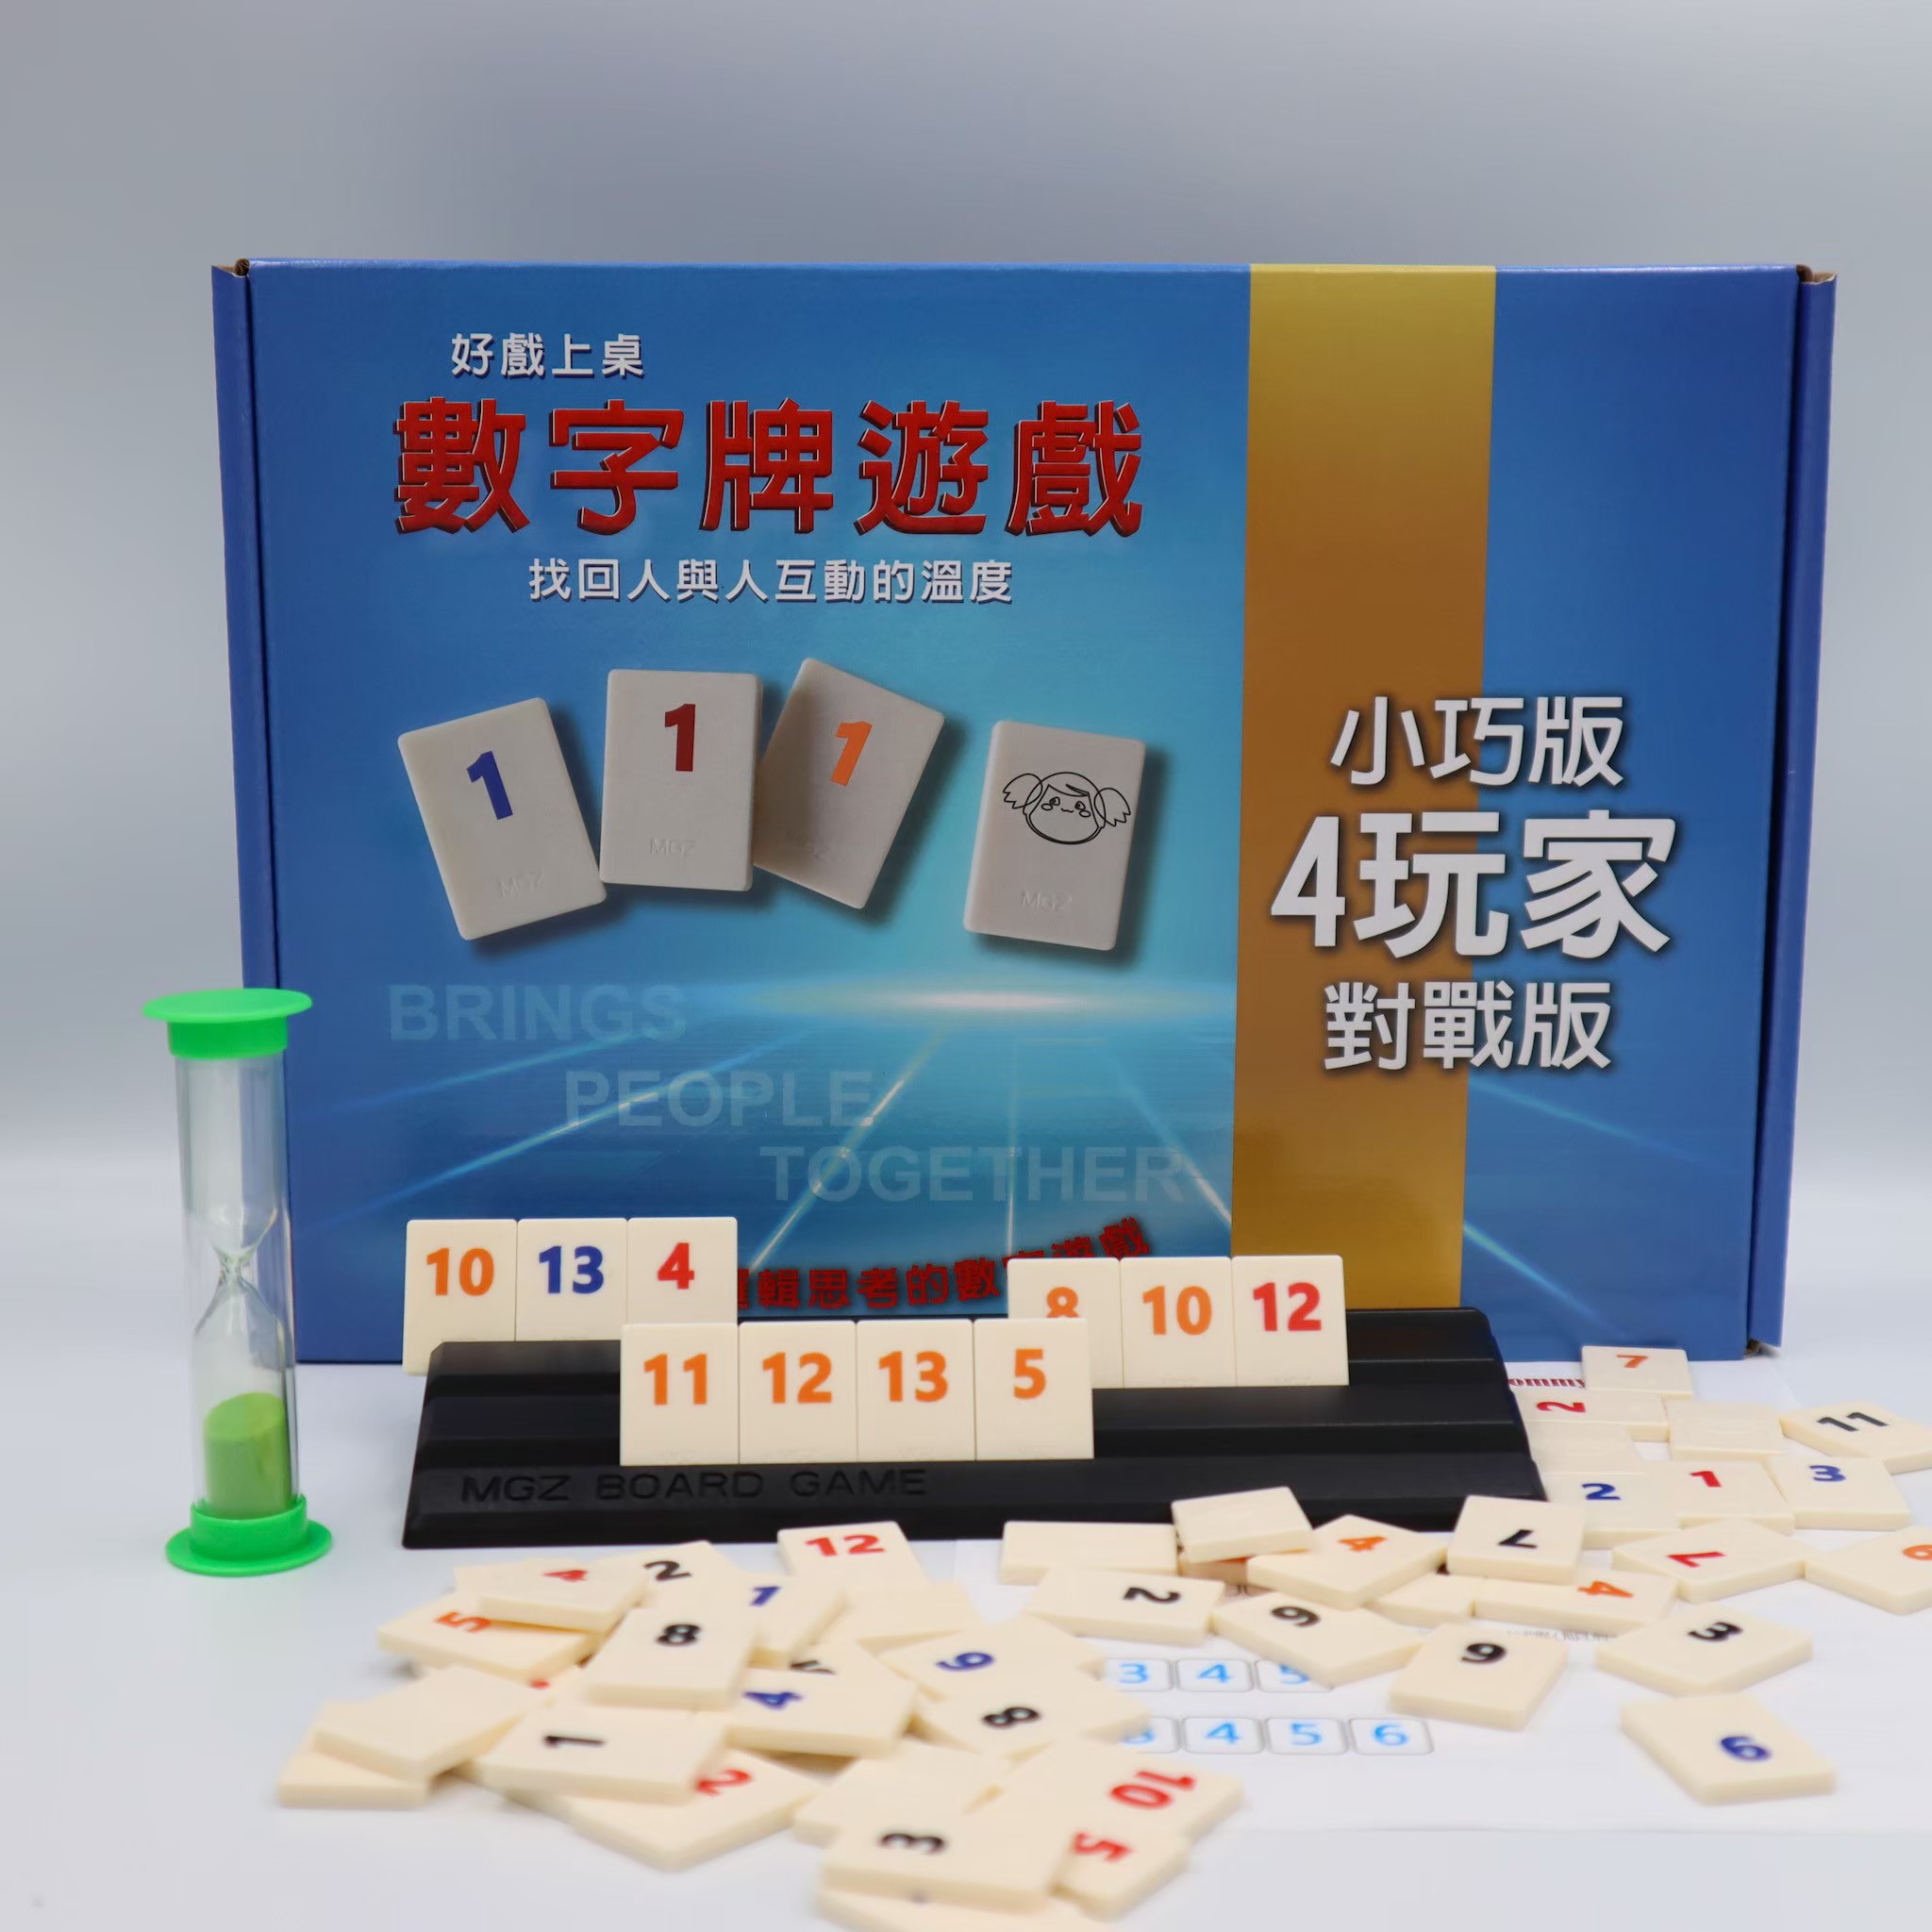 【漫格子】數字遊戲旅行盒裝版 4人版 送沙漏 繁體中文說明書